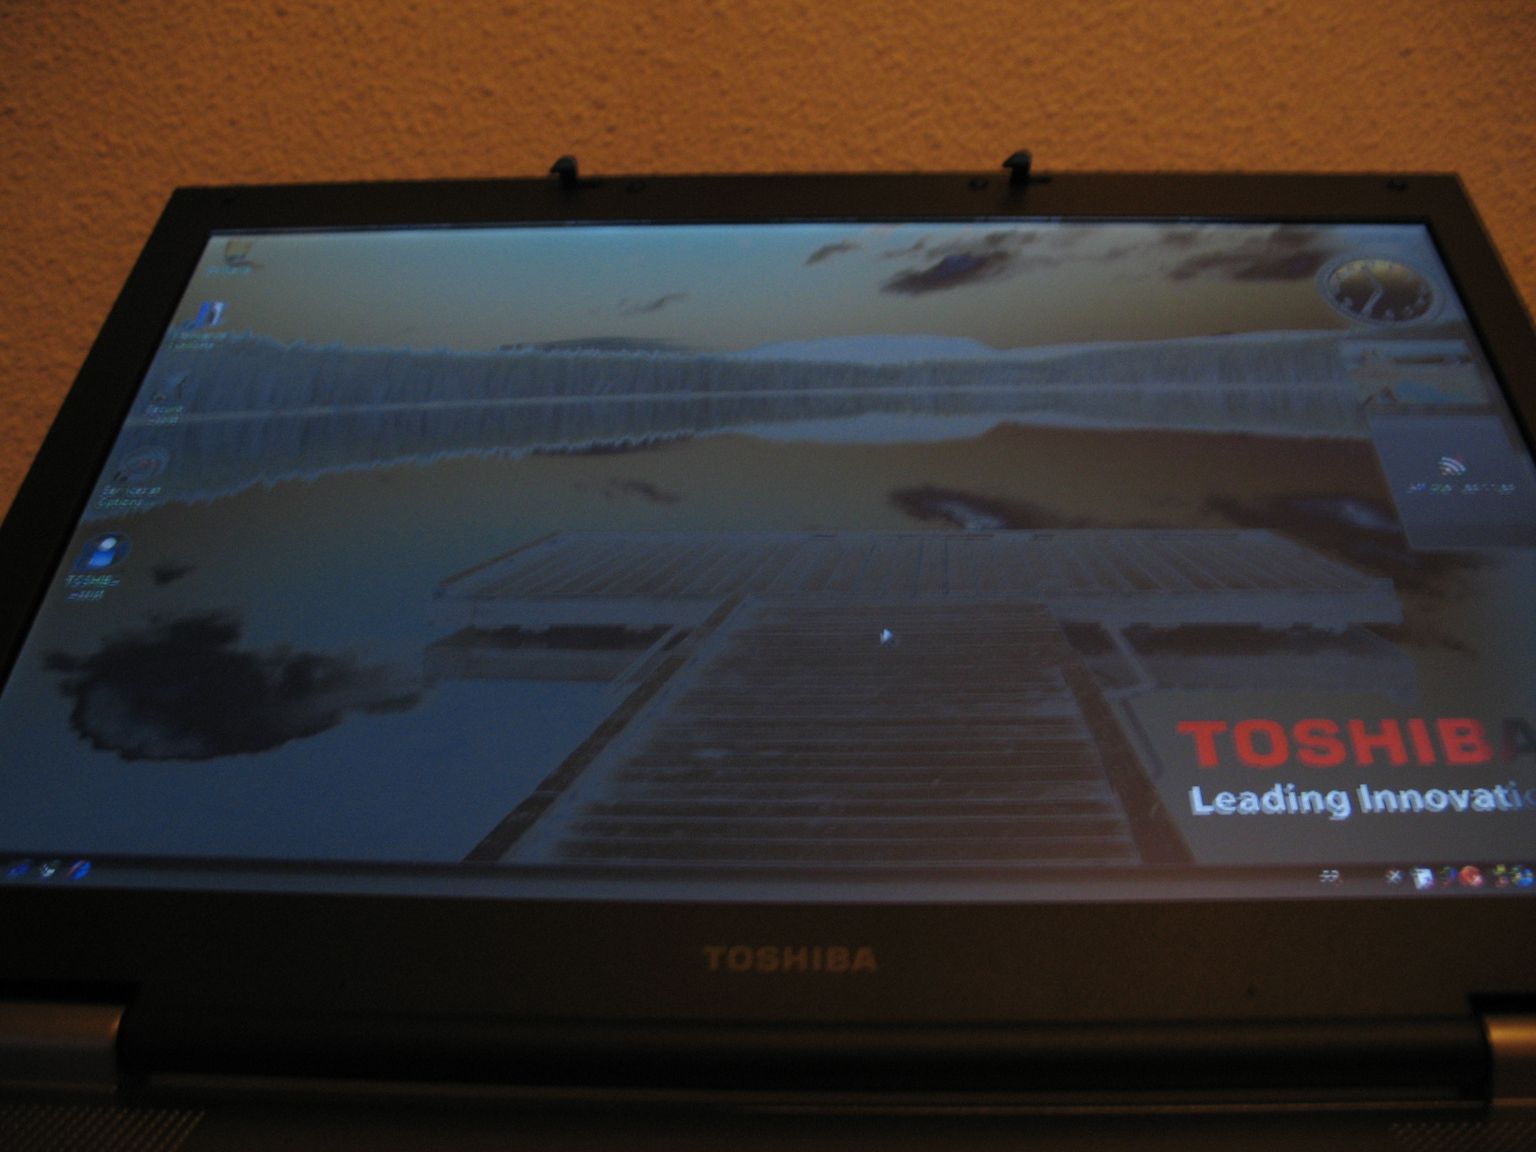 Toshiba Tecra A8 : angle inférieur